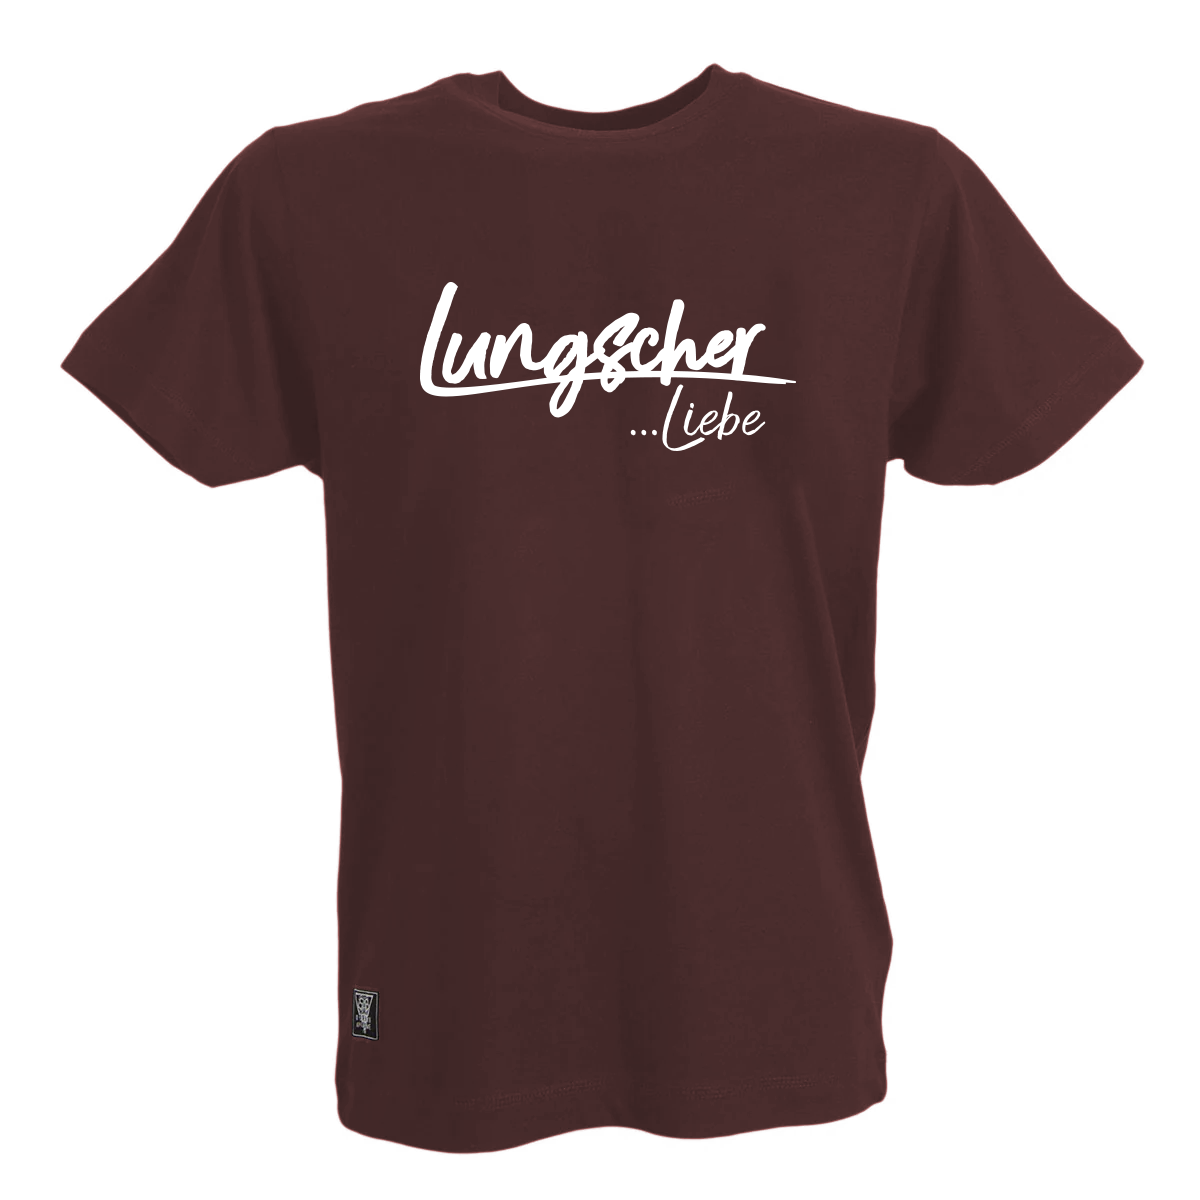 Lungscher Liebe Herren T-Shirt Bordeaux - B2BA Clothing red / S / Liebe